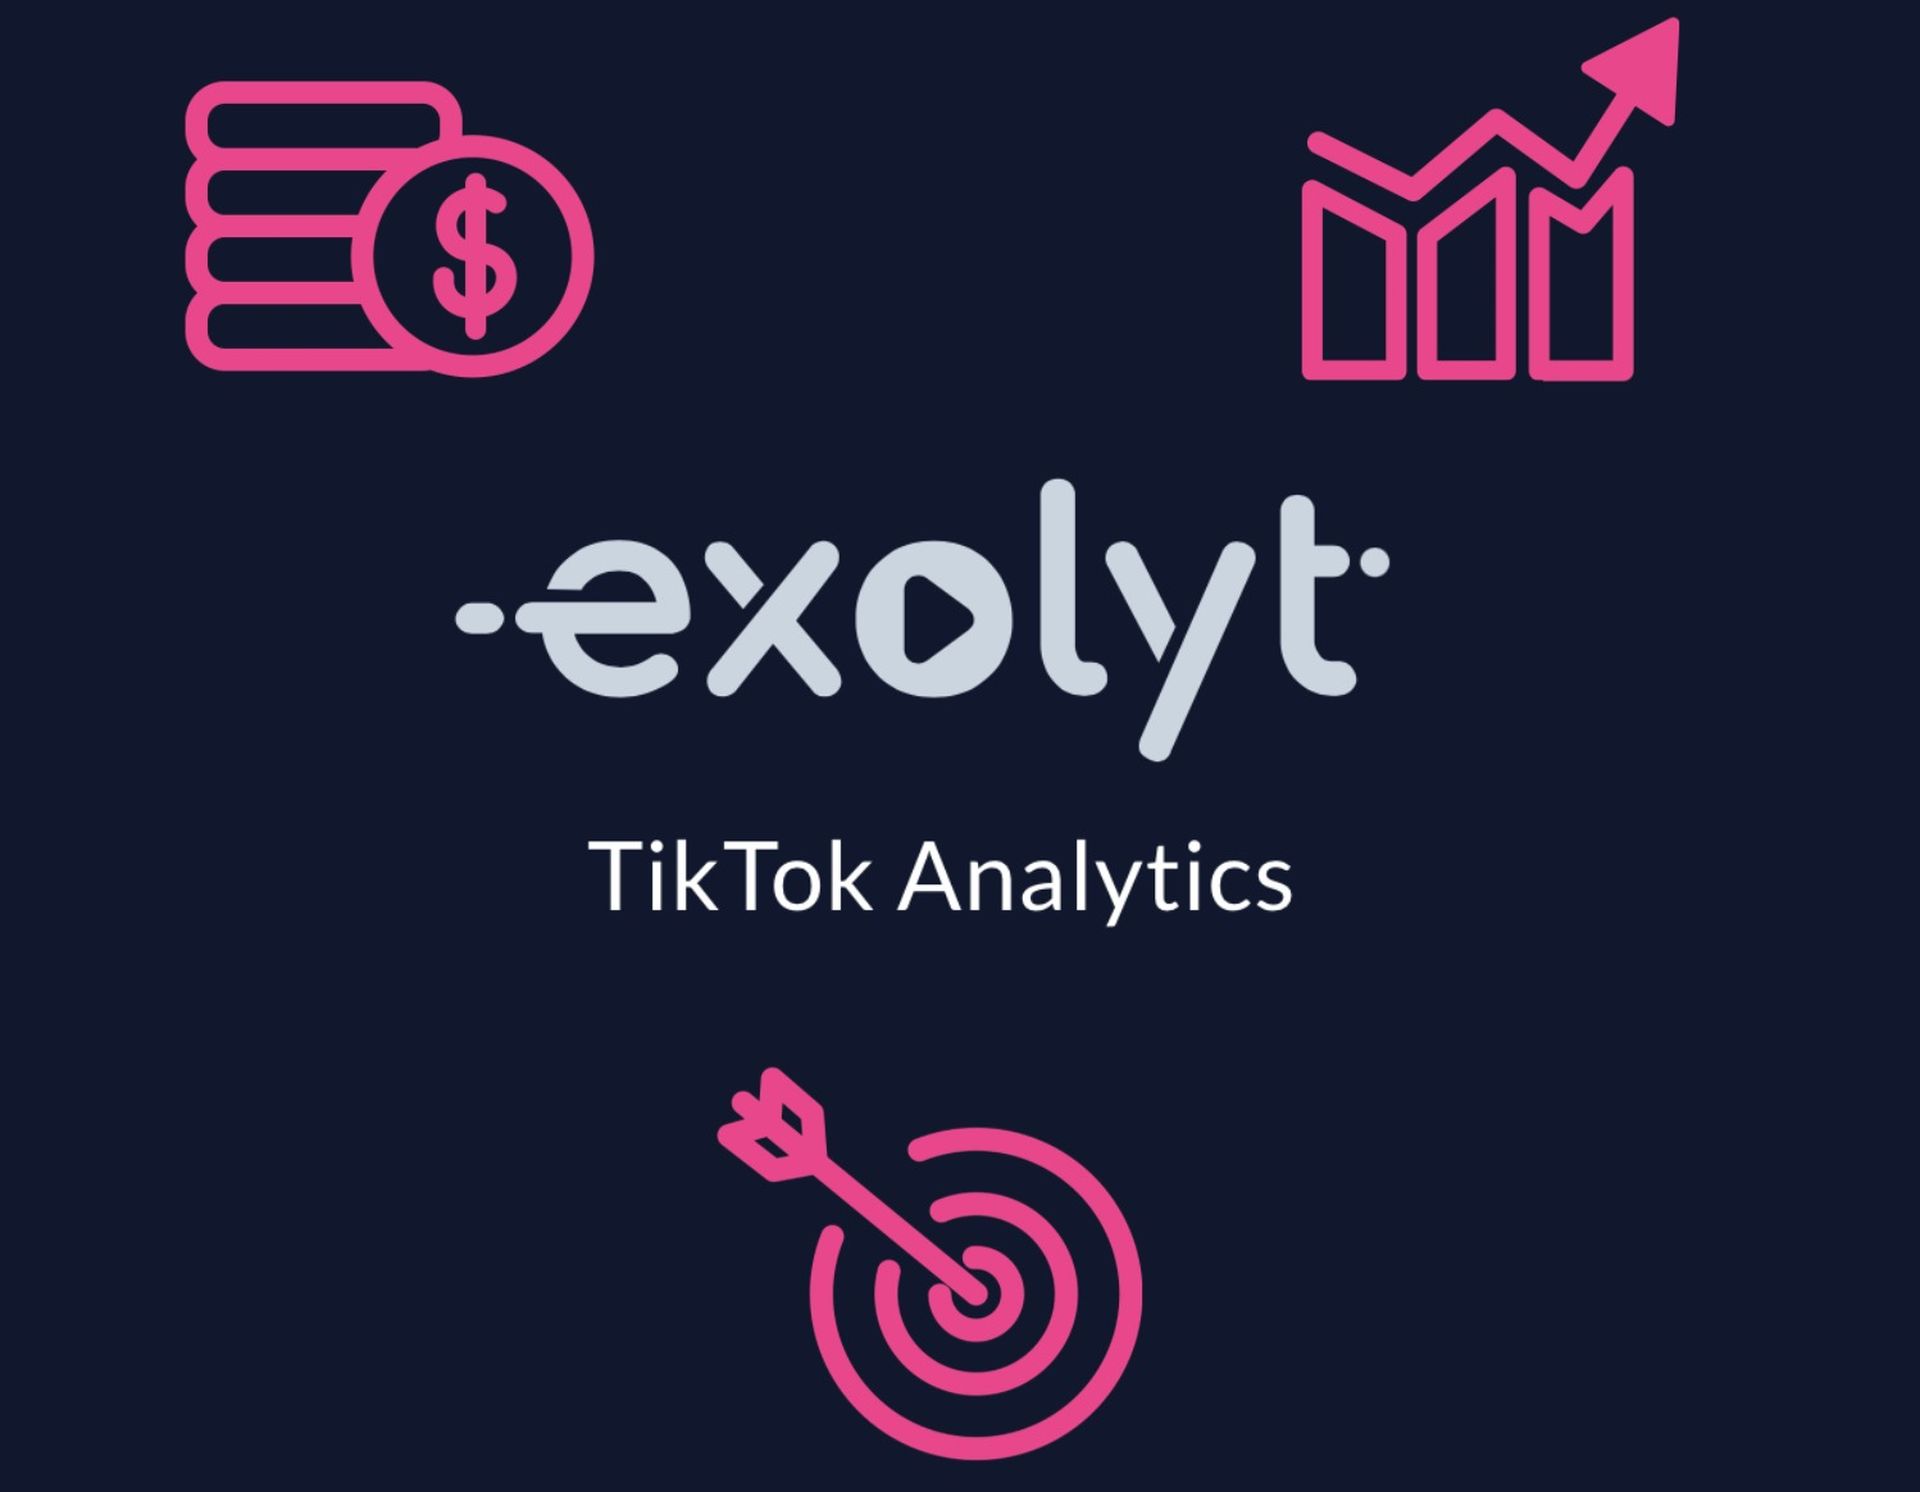 Сегодня мы расскажем вам, что такое калькулятор TikTok Exolyt, аналитический инструмент, который может помочь вам стать влиятельным лицом и зарабатывать деньги.